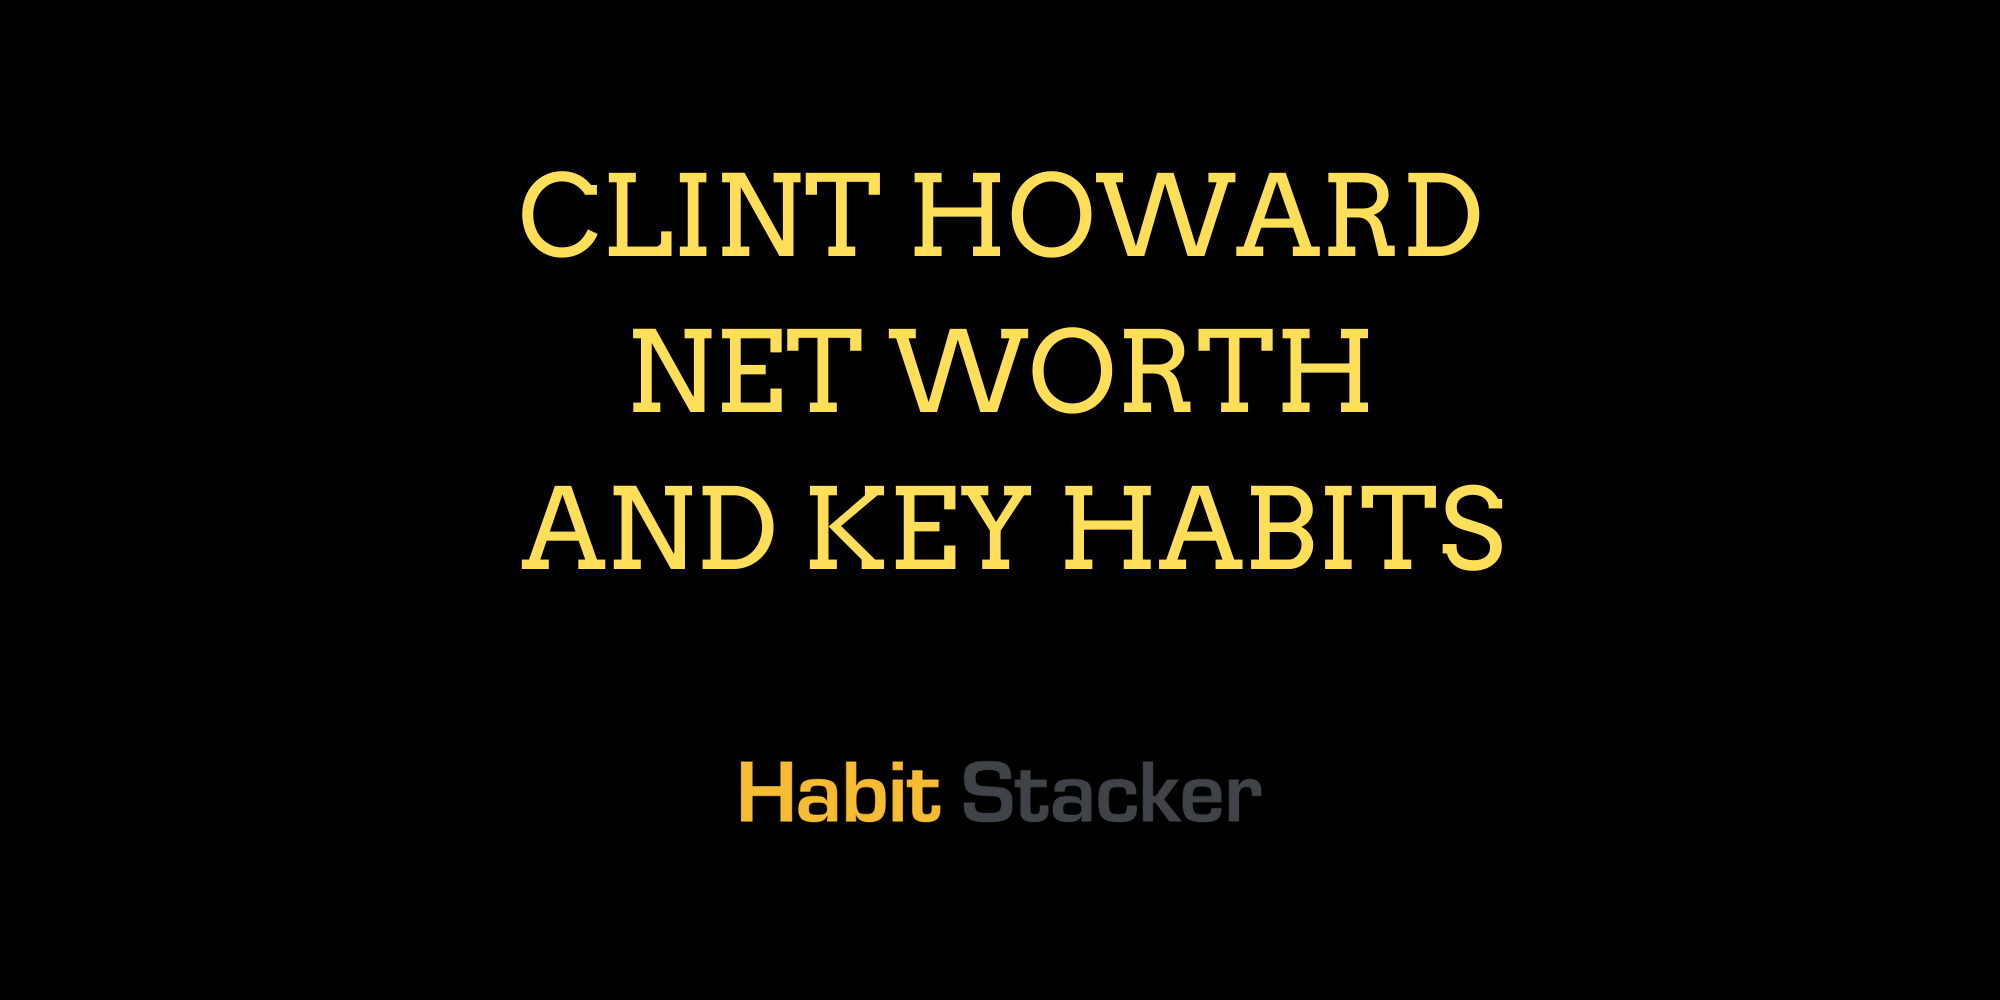 Clint Howard Net Worth and Key Habits